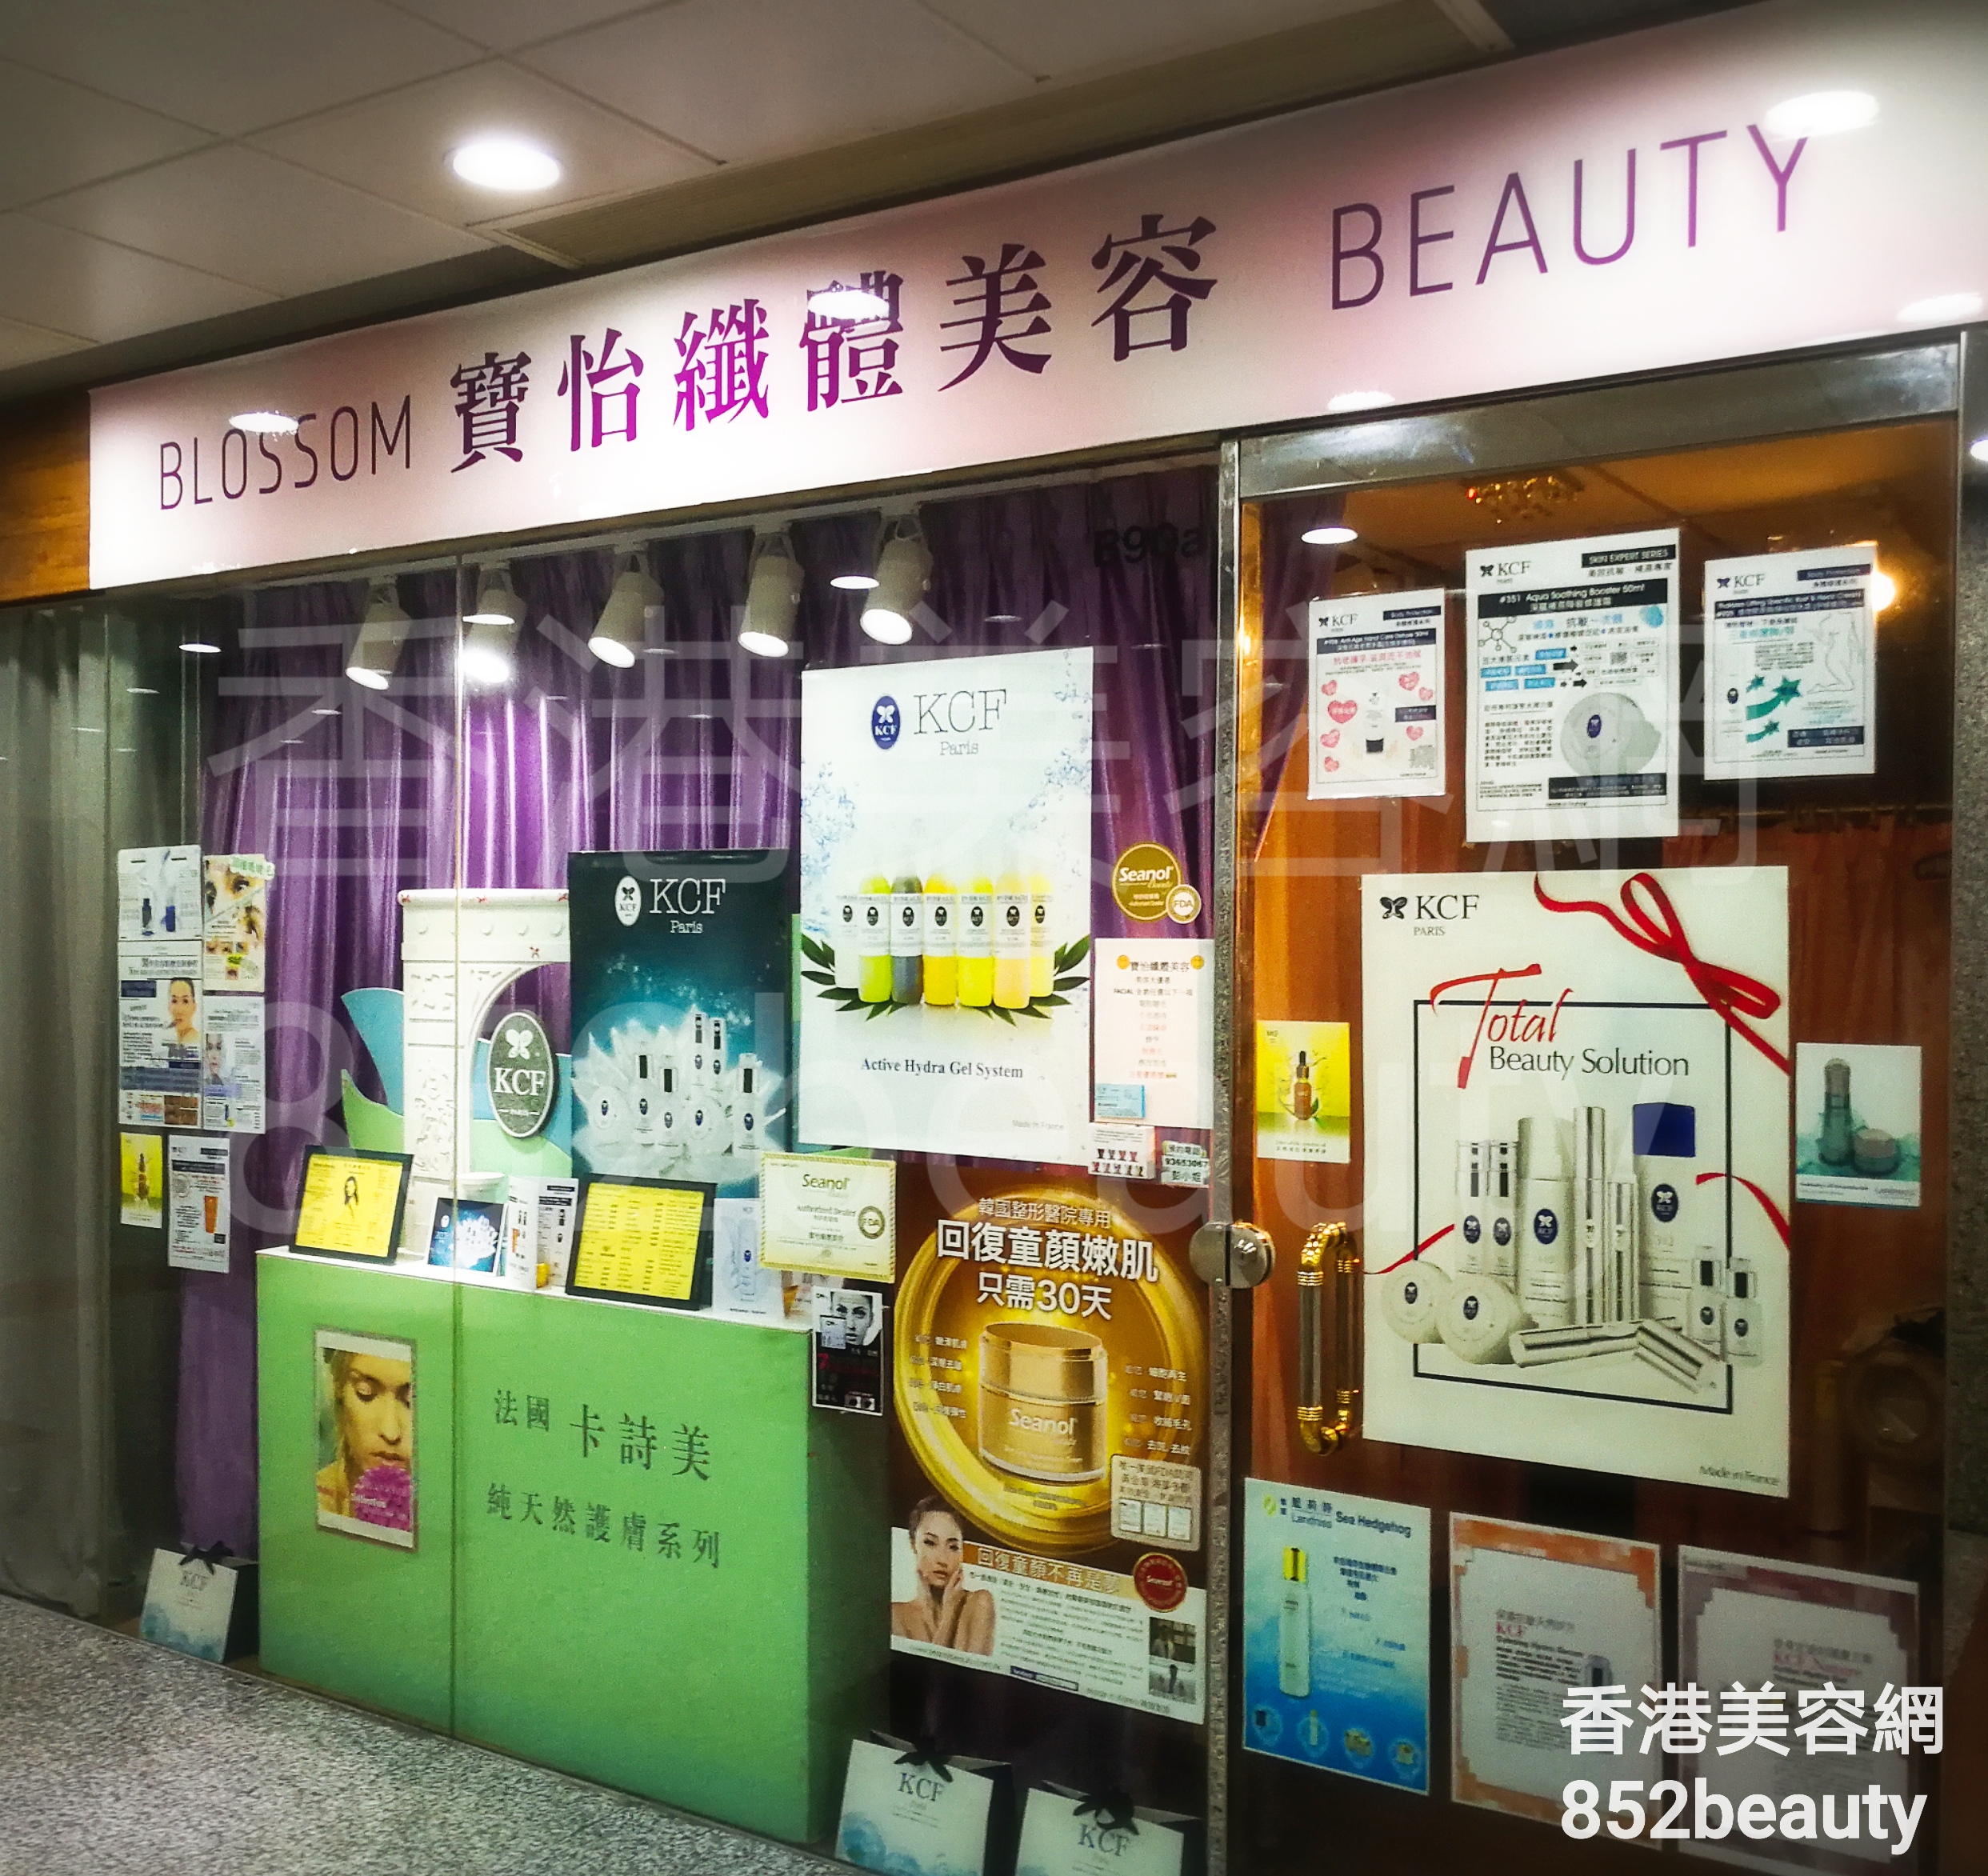 美容院 Beauty Salon: 寶怡纖體美容